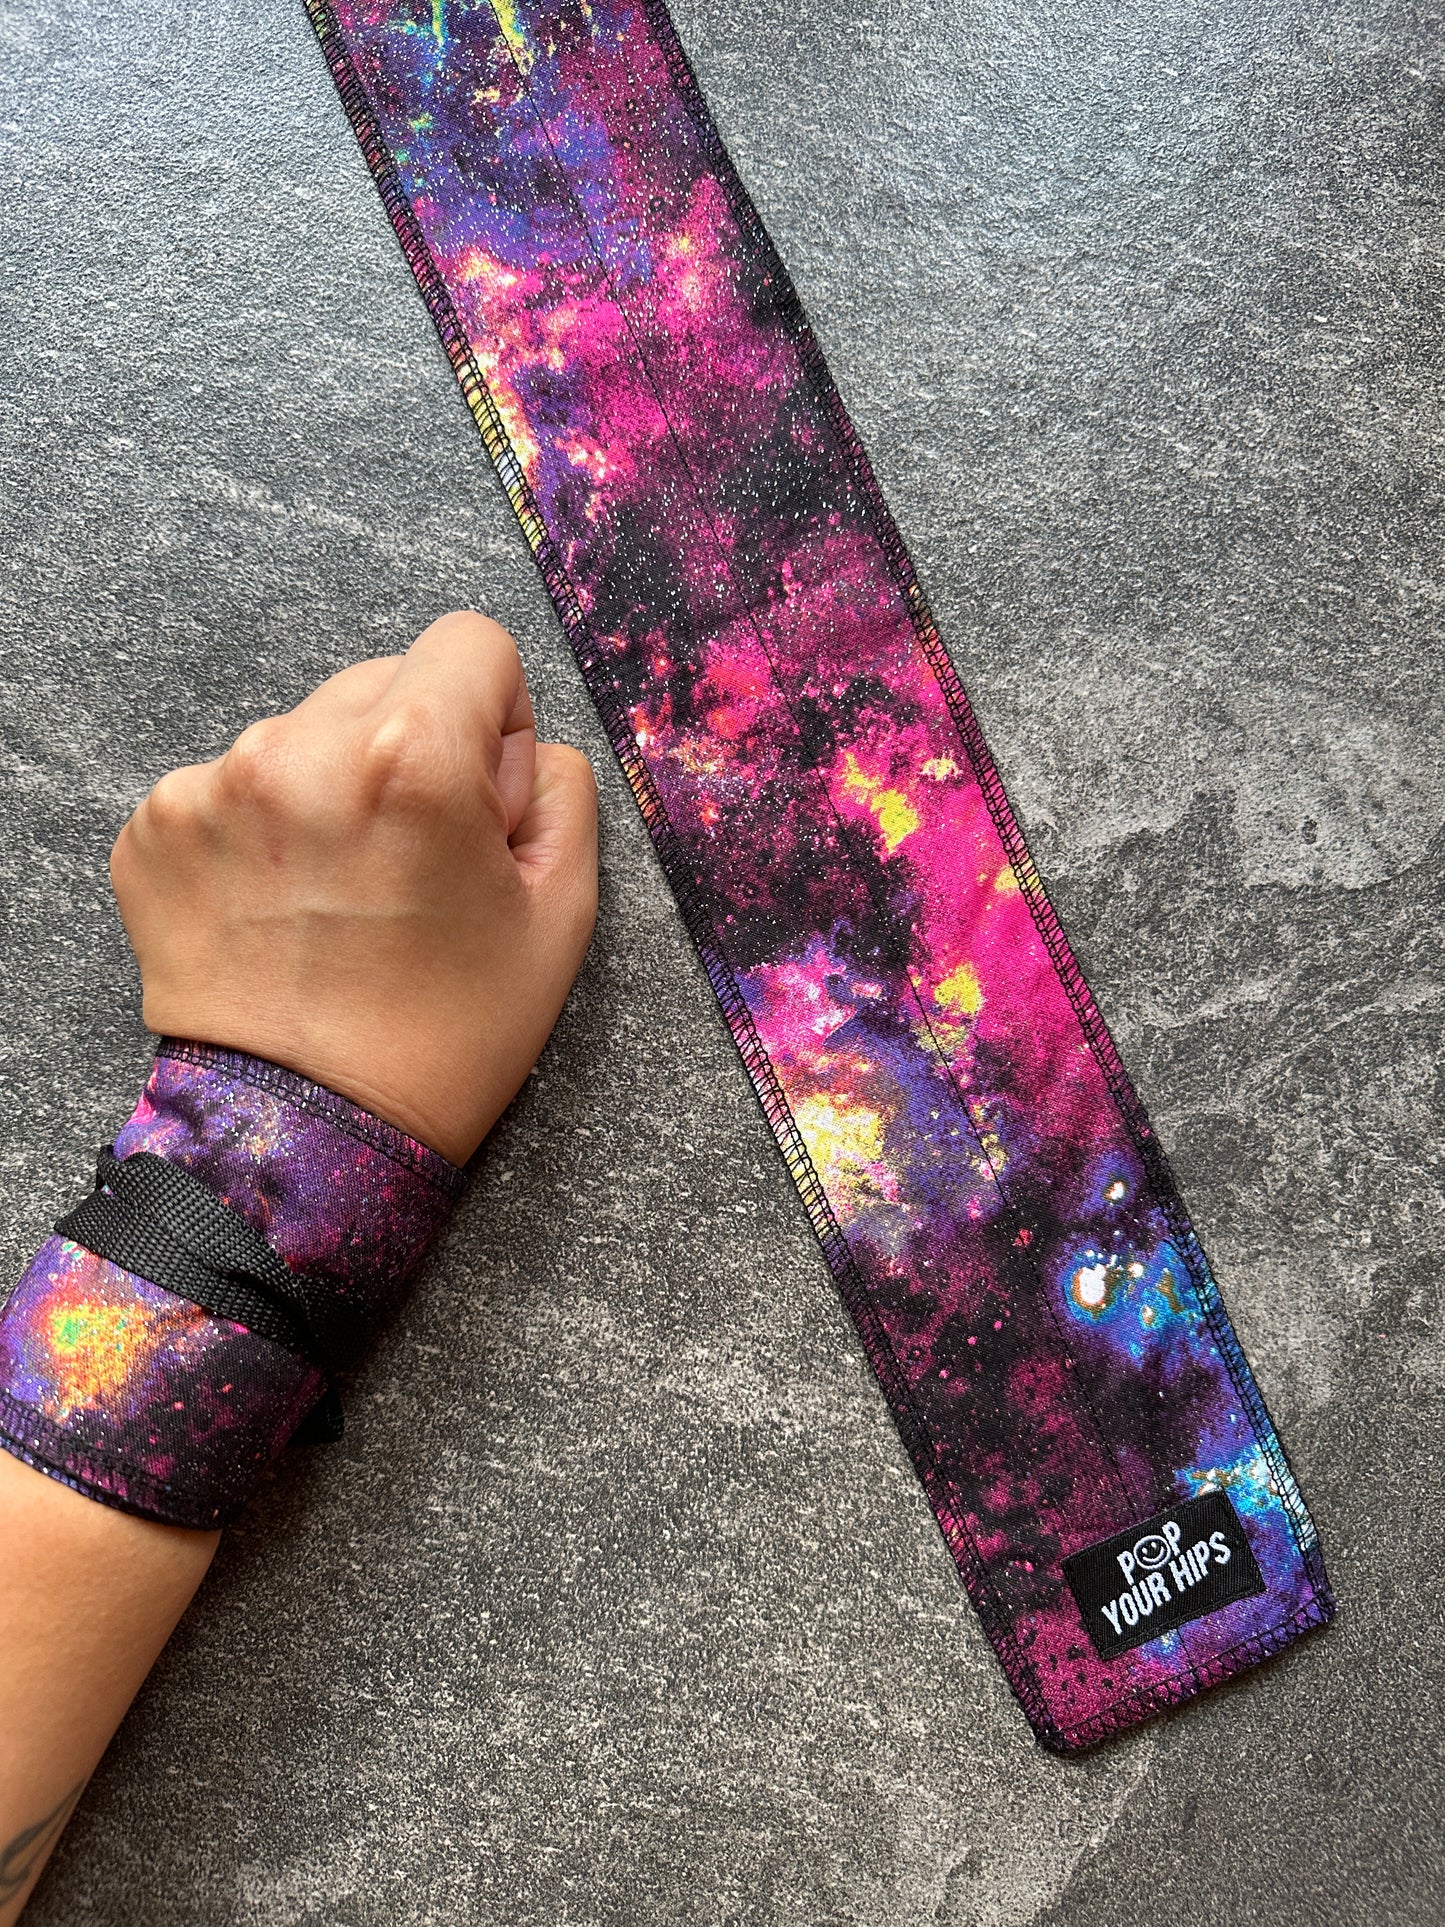 Galaxy glitter wrist wraps